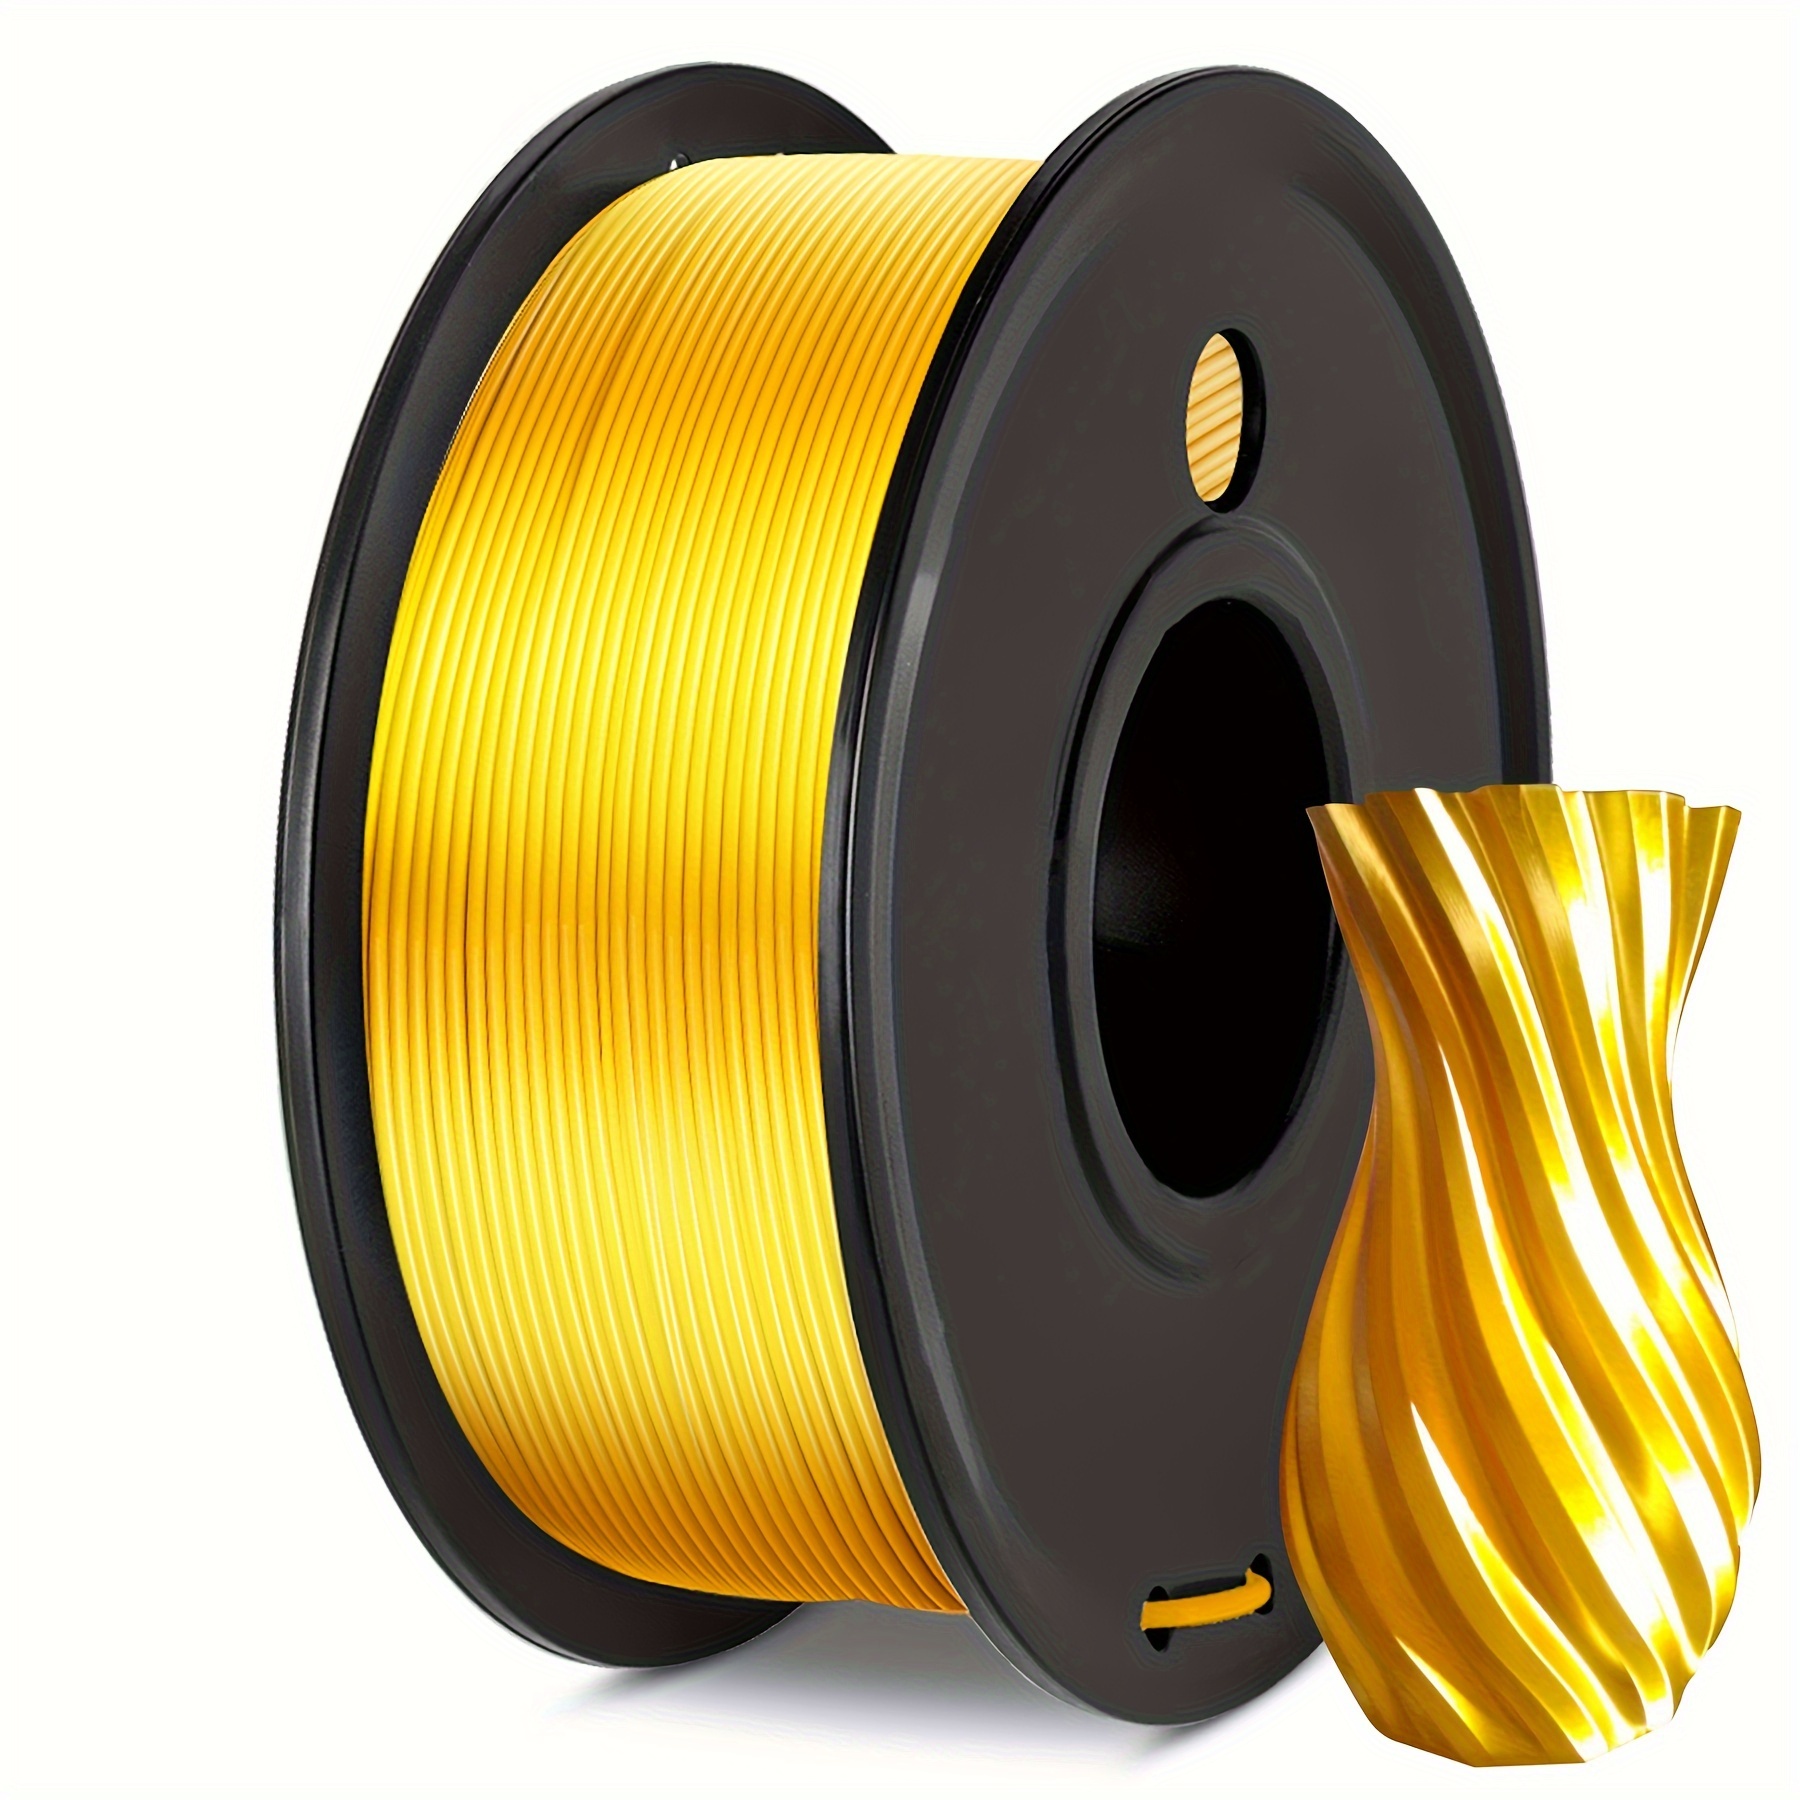 Sunlu 250g Pla Filament 1.75mm, Filament Imprimante 3d, Précision  Dimensionnelle +/- 0.02 Mm, Bobine 0.25 Kg, Livraison Gratuite, Retours  Gratuits